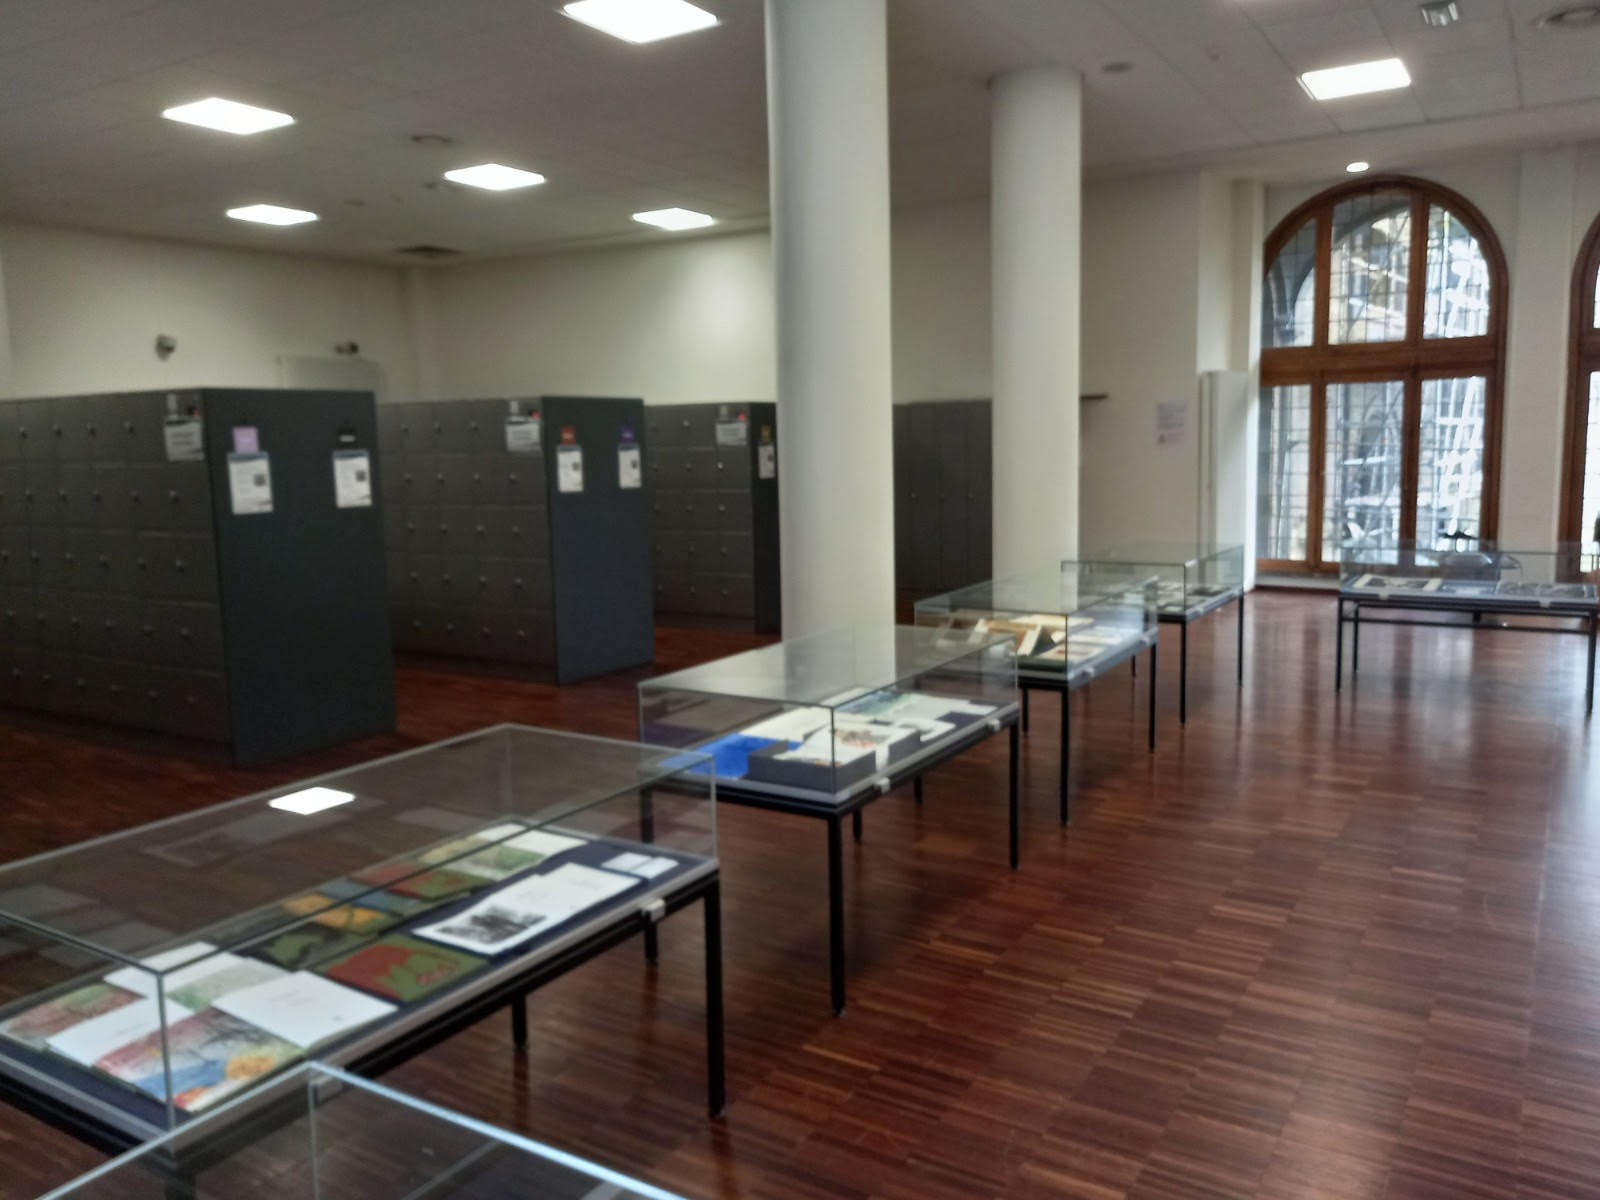 Exposicion libros de artista Biblioteca Universidad de Amberes, Bélgica 1